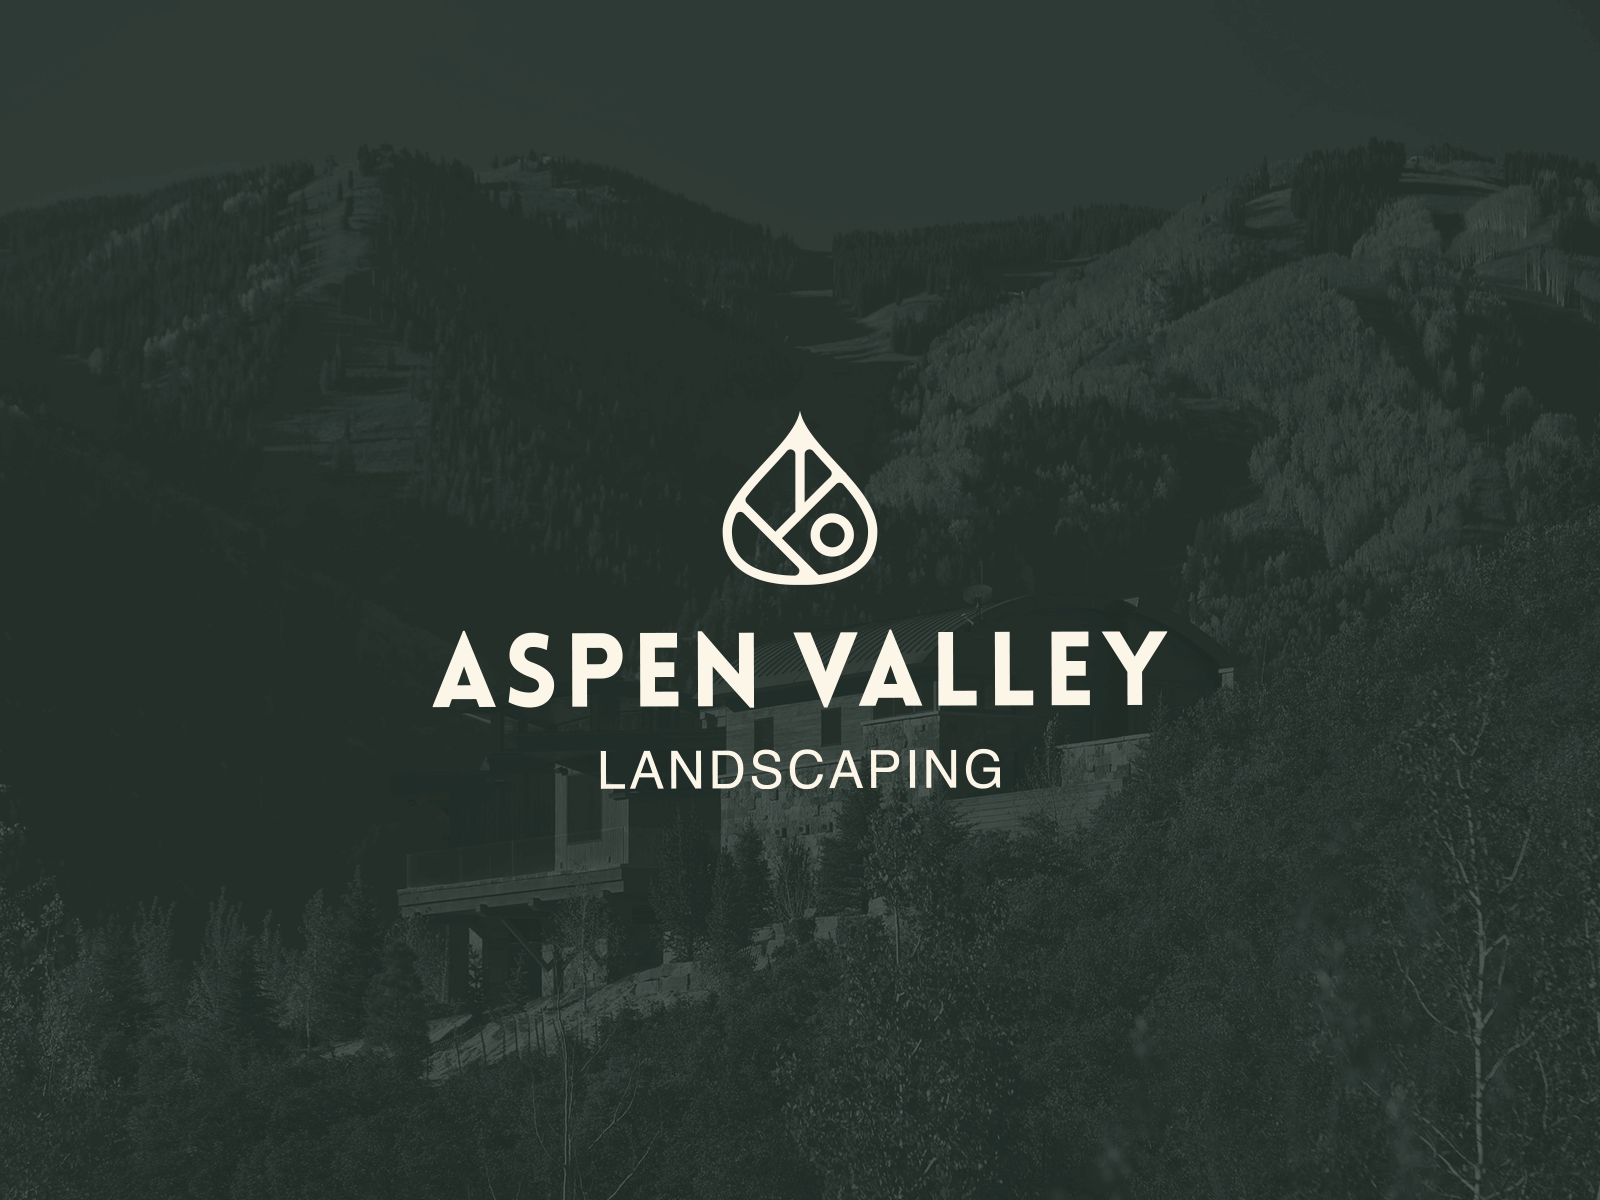 Aspen Valley Landscaping